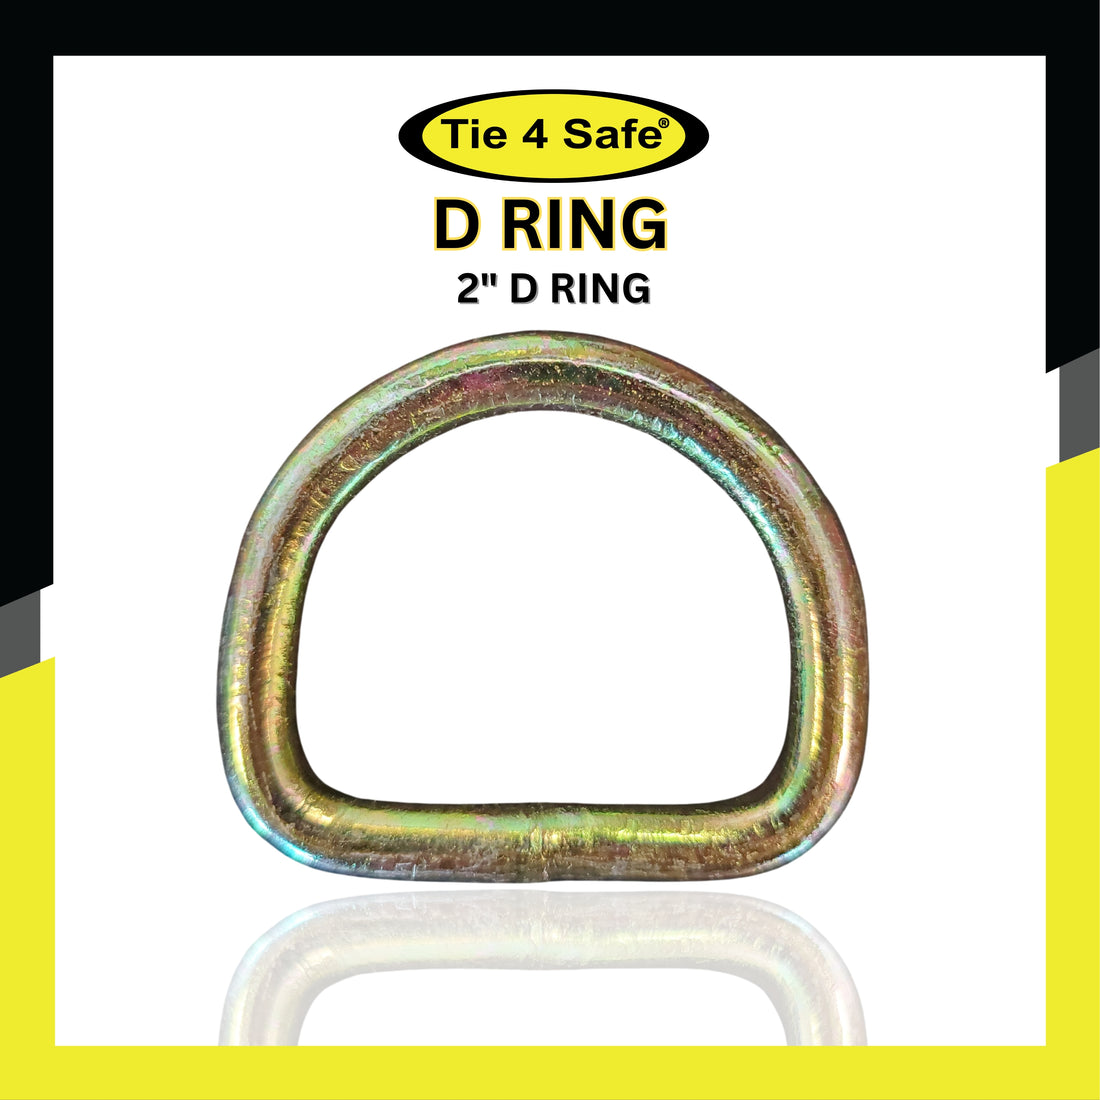 2" D Ring - 10,000 LBS